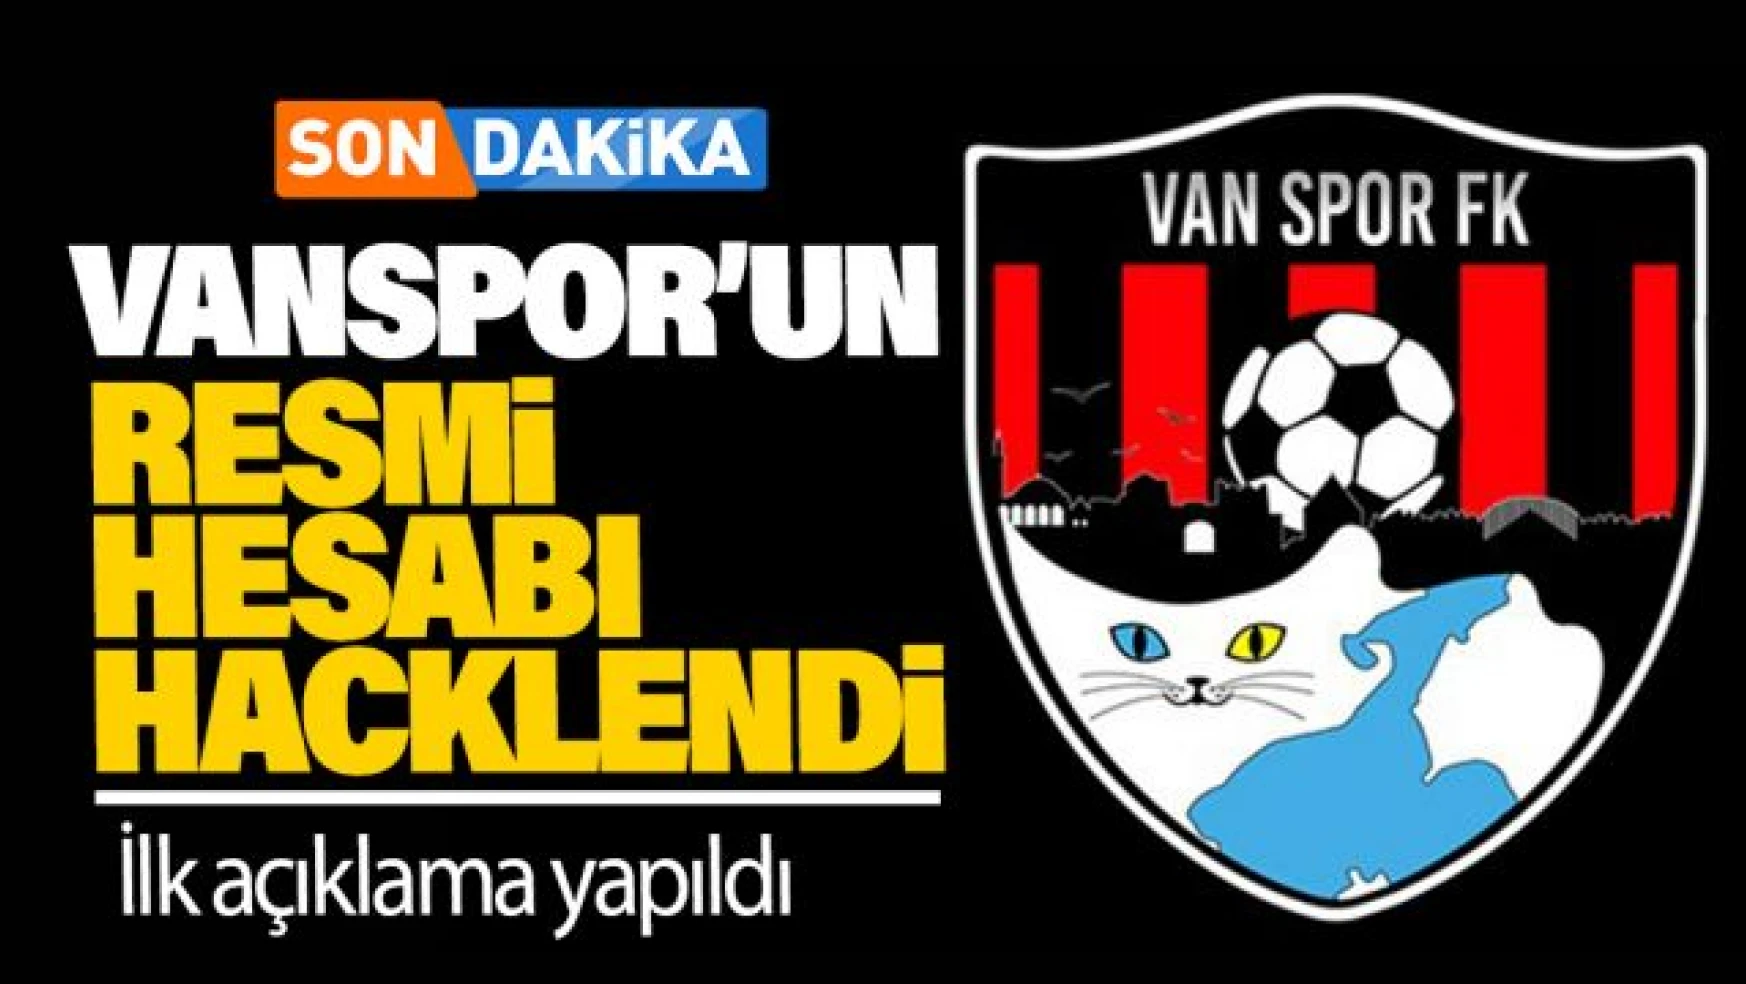 Vanspor'un Twitter hesabı hacklendi!